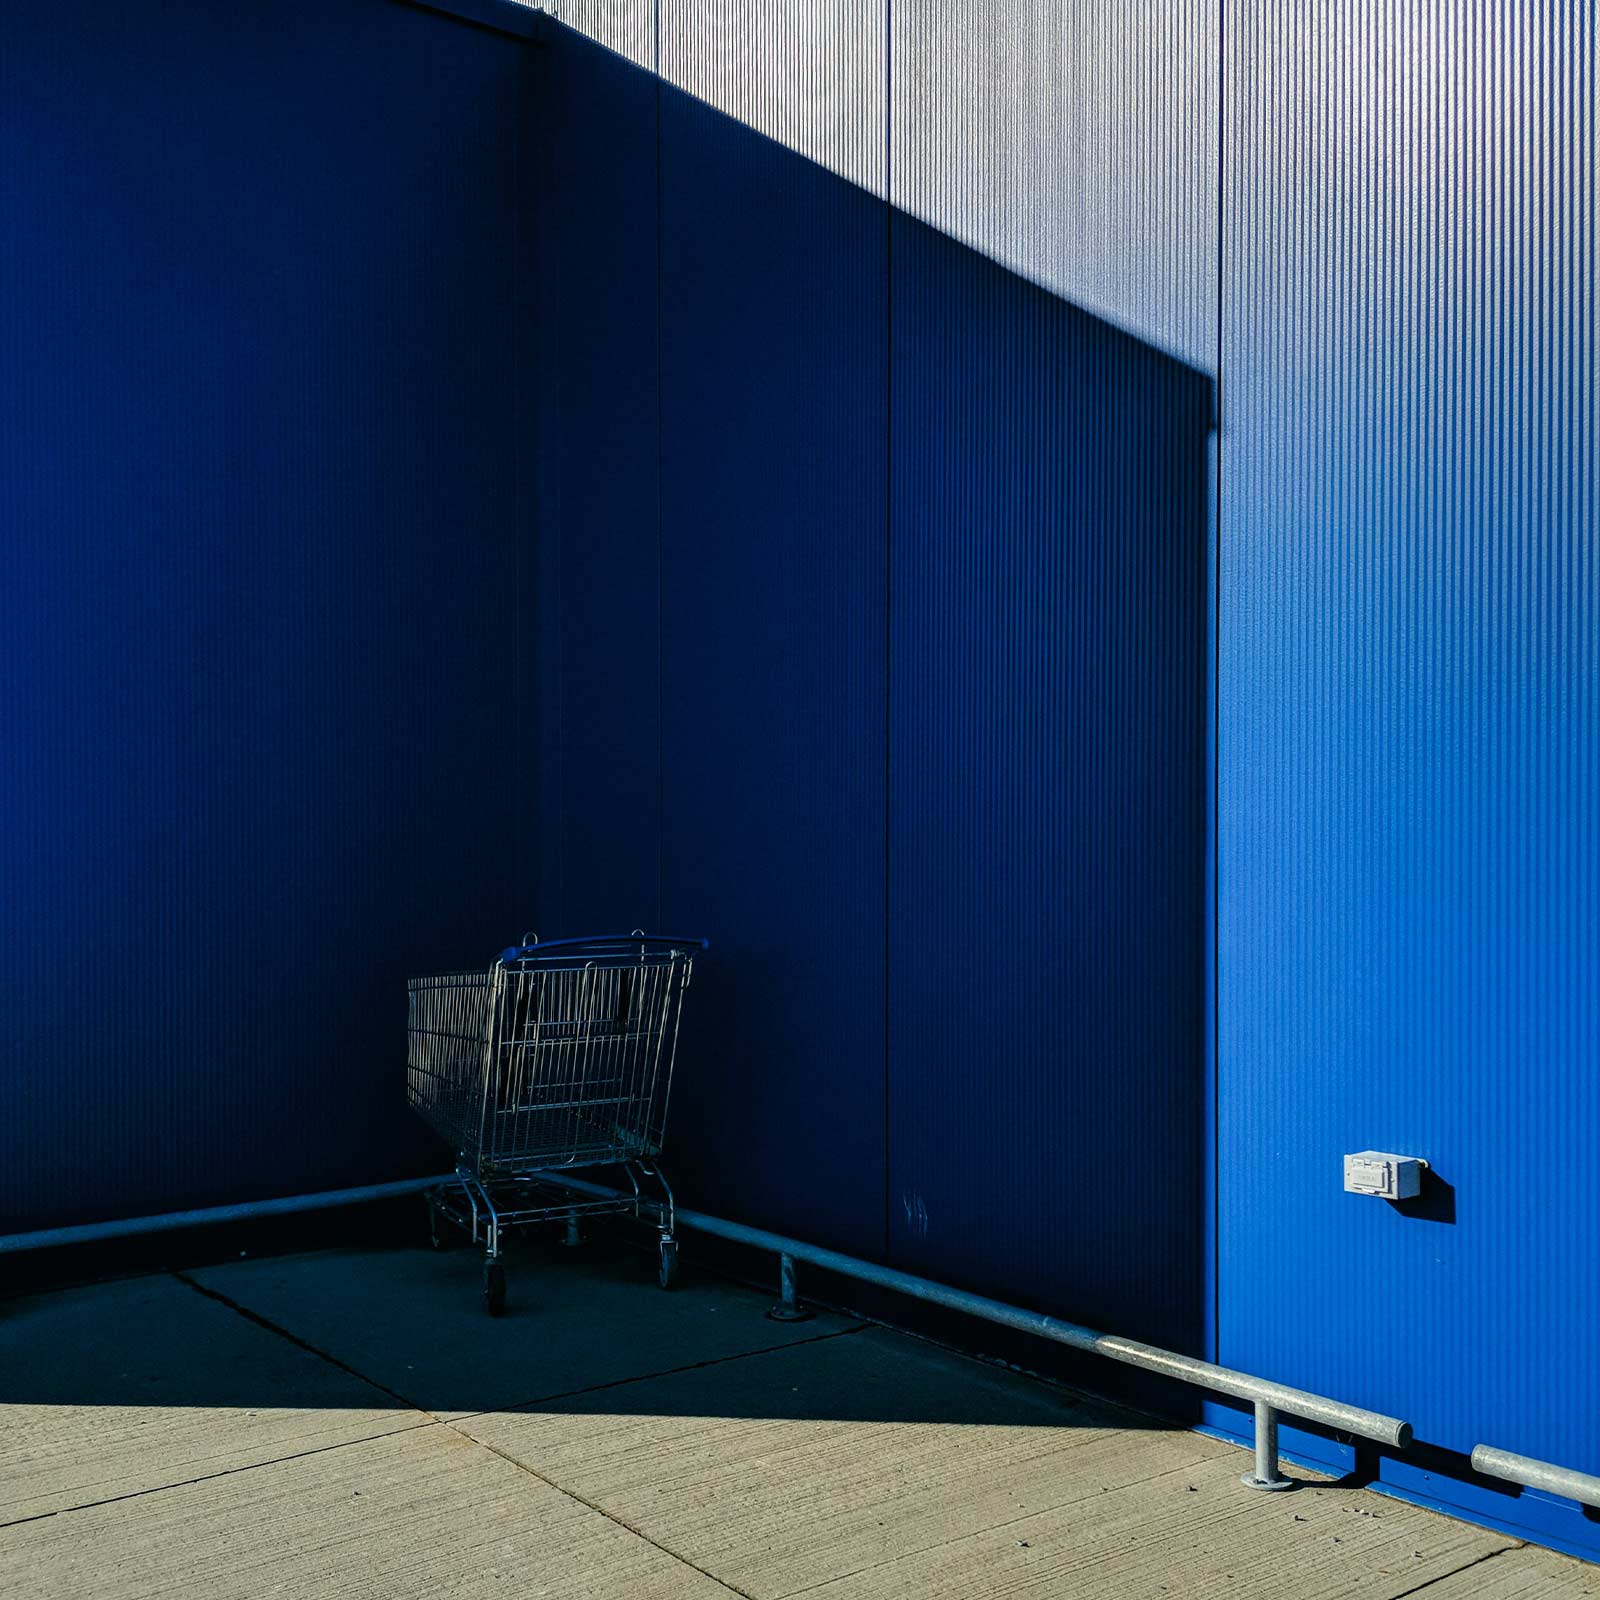 Καλάθι αγορών ξεχασμένο στη γωνία ενός μπλε τοίχου